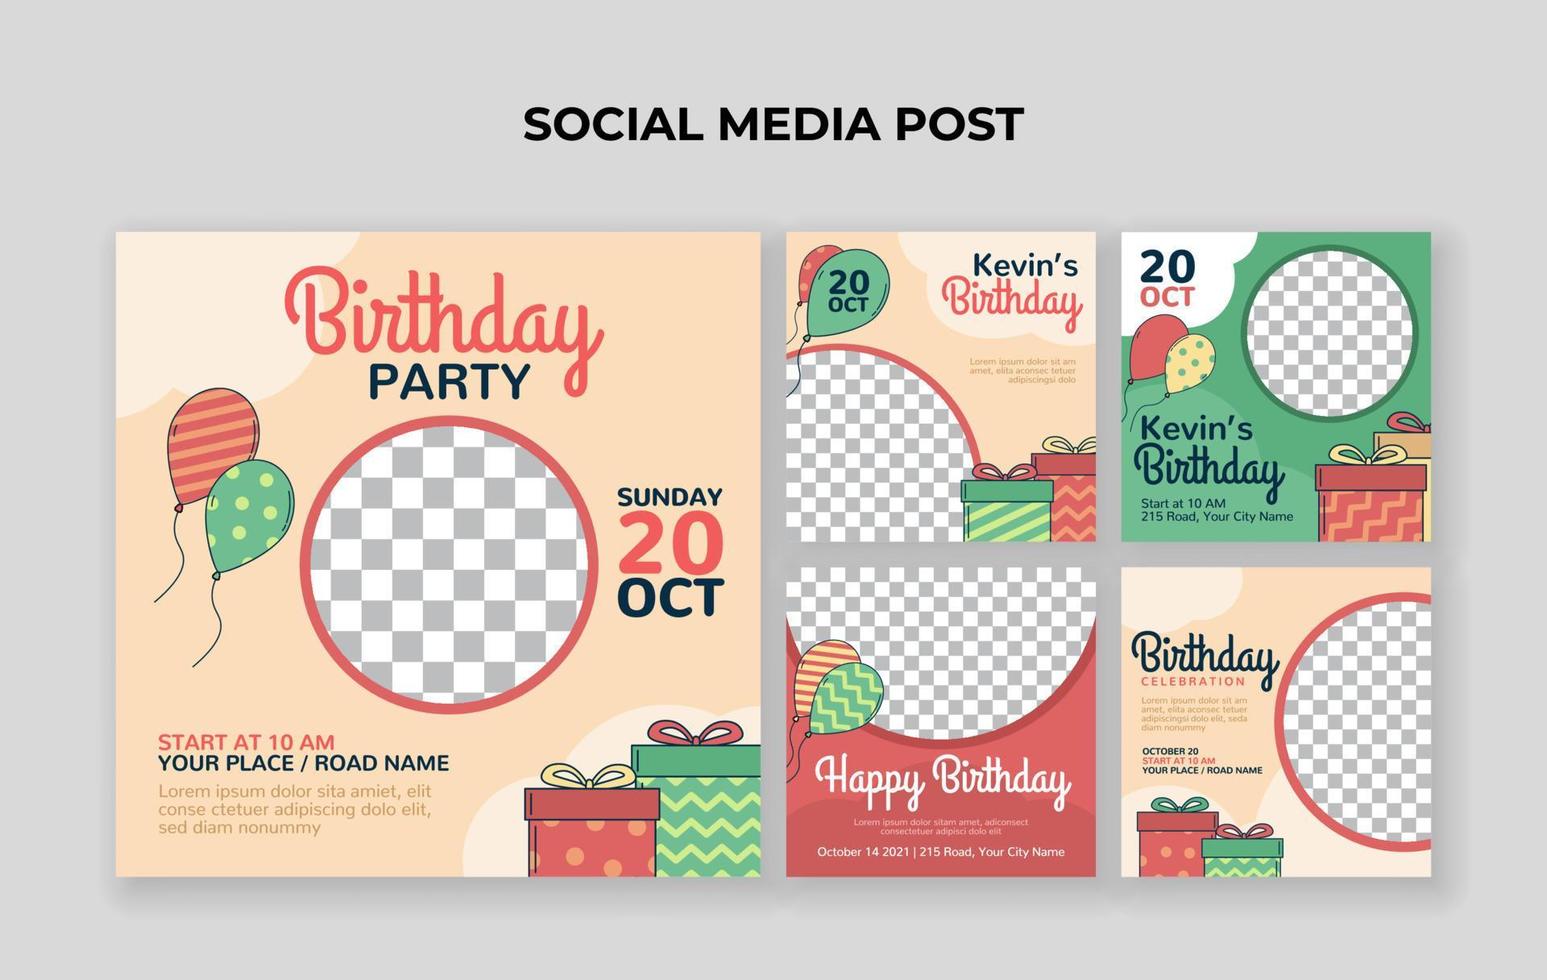 modelo de postagem de mídia social de festa de aniversário infantil. adequado para convite de aniversário infantil ou qualquer outro evento infantil vetor